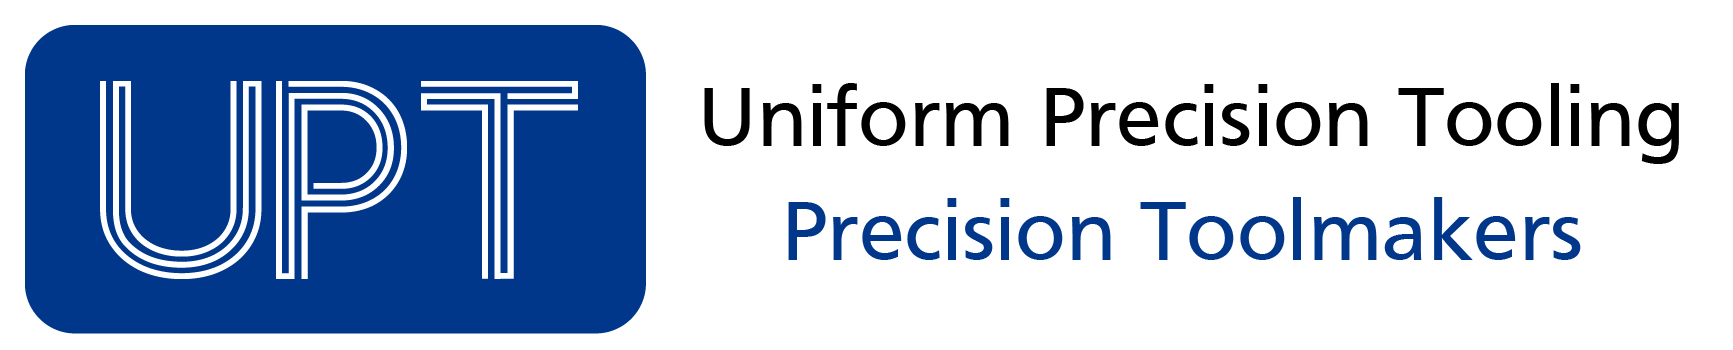 Uniform Precision Tooling